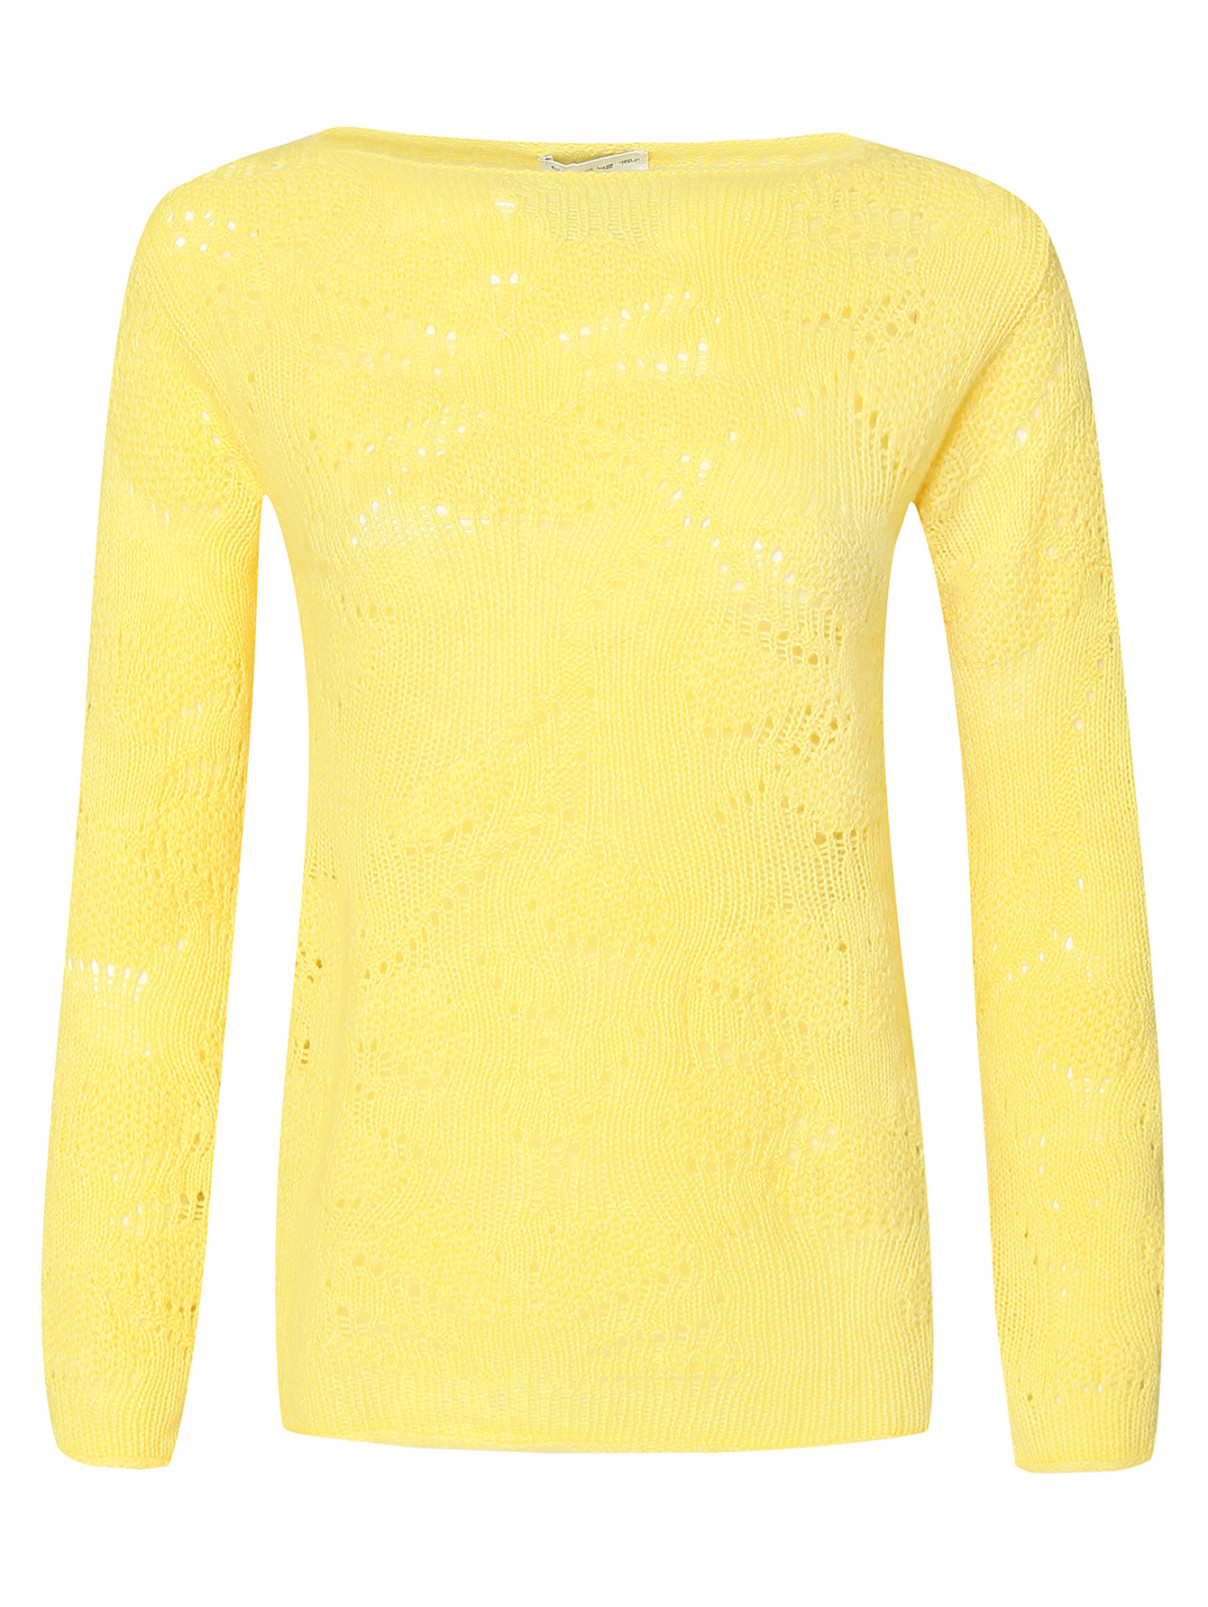 Джемпер из шерсти ажурной вязки Etro  –  Общий вид  – Цвет:  Желтый